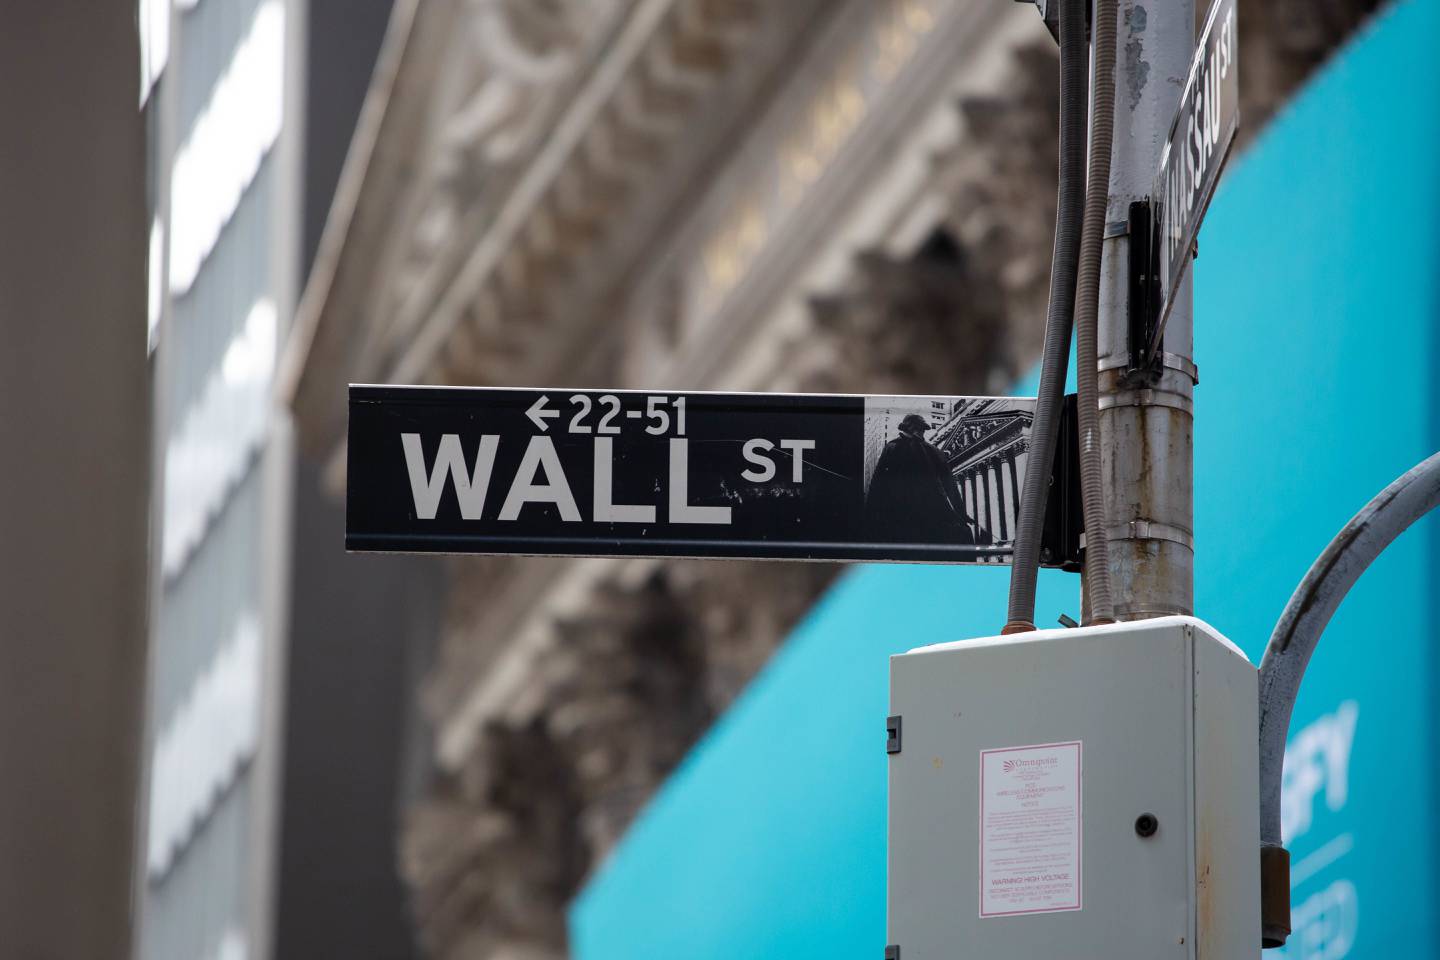 Señalización de la calle Wall Street.